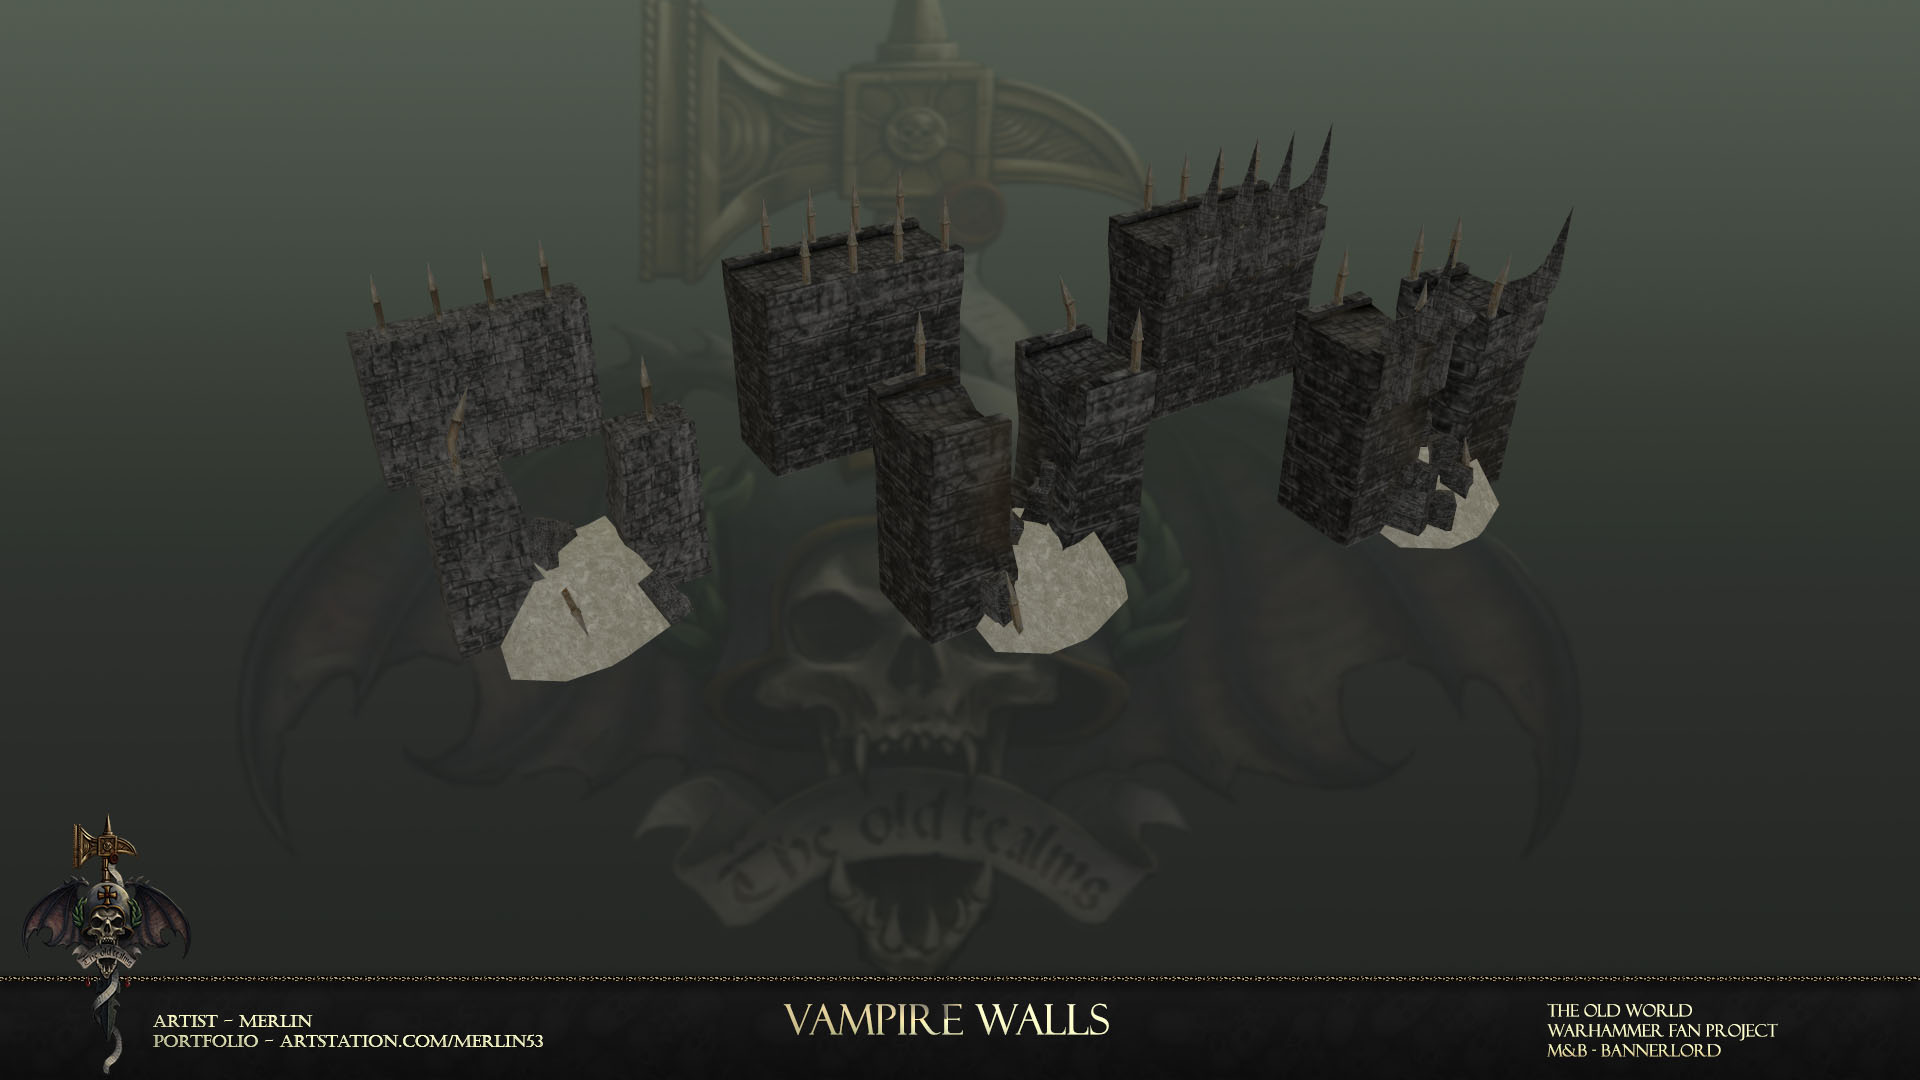 Vampire walls